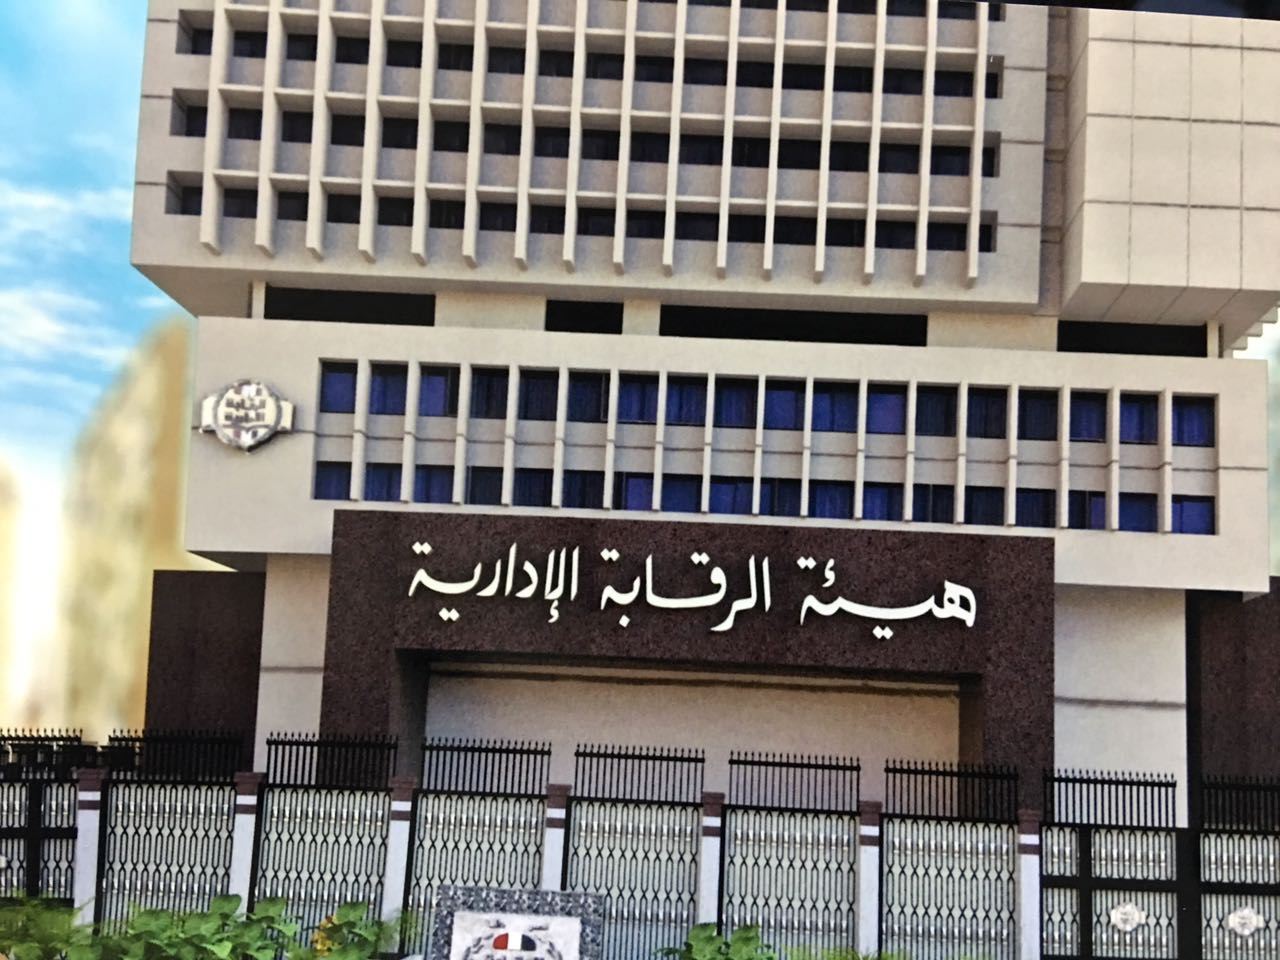 تهدف لتقويم سلوكيات صغار الموظفين 

مصر.. حملات إعلامية لمواجهة الفساد